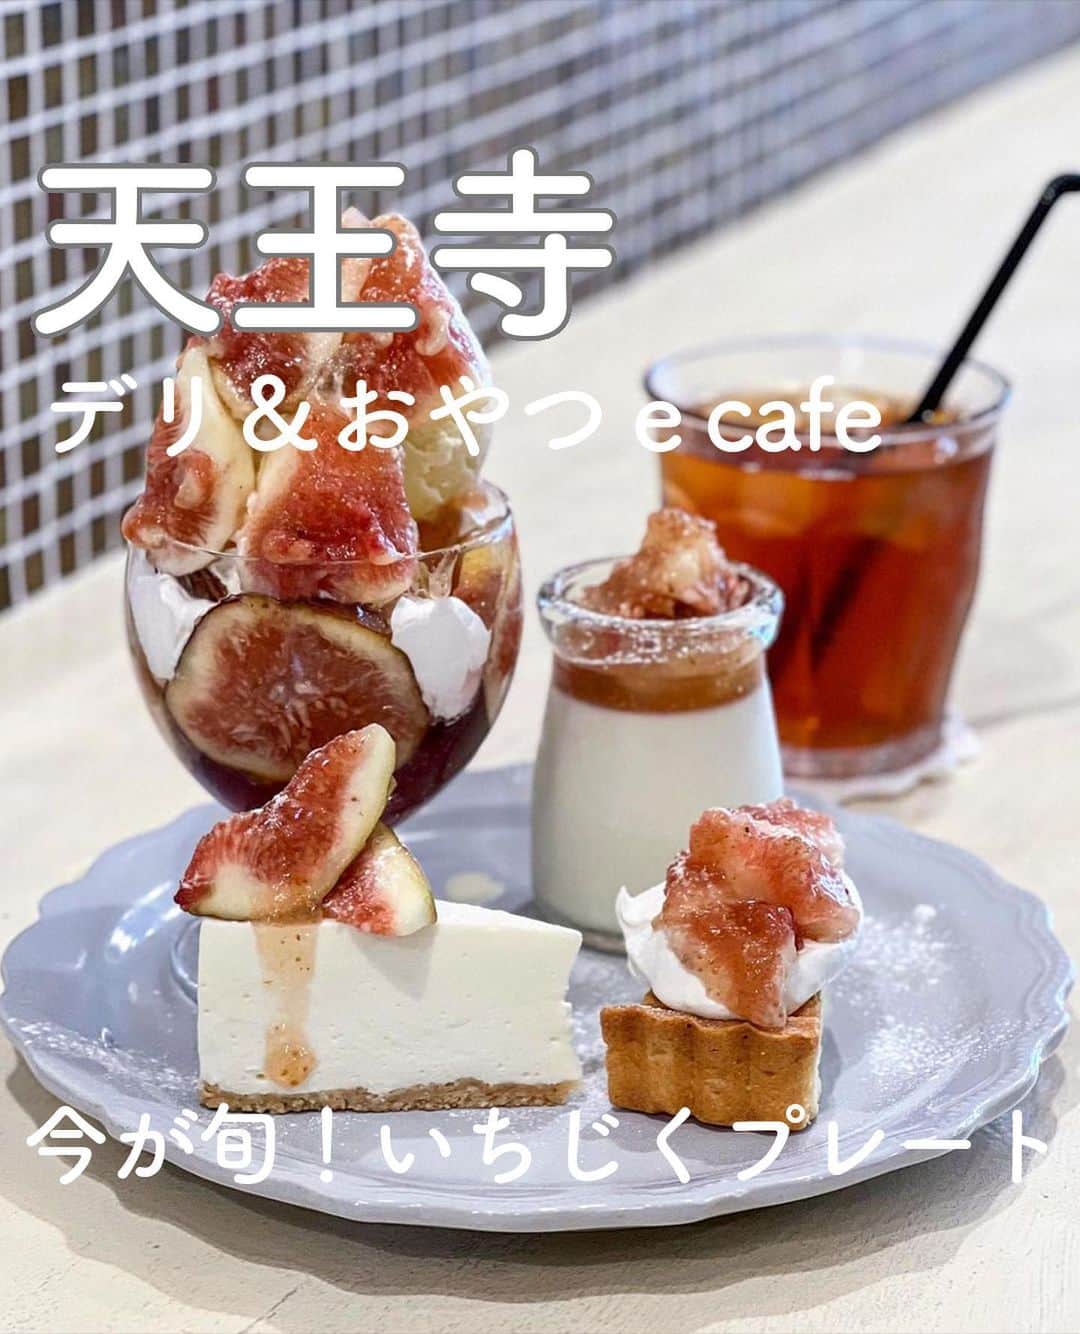 RETRIP<リトリップ>グルメのインスタグラム：「【RETRIP×大阪🍰】 こちらは、大阪・天王寺にある「デリ&おやつ e cafe」です。日によって変わるおやつやおかずのラインナップが楽しいこちらのカフェ。写真は「いちじくハーフ盛り盛りプレート」に「いちじくパンナコッタ」をトッピングしたもの。あま〜く柔らかい果肉に、手作りのレアチーズケーキやタルトがコラボレーション✨秋の味覚”無花果”を思う存分味わうことができる、大満足のデザートプレートになっています！  [スポット情報] 📍住所：〒543-0074 大阪府大阪市天王寺区六万体町 5-20 ecafe プレミアパリエ四天王寺 🚃最寄り駅：四天王寺前夕陽ケ丘駅から徒歩すぐ 🕐営業時間：月 11時〜L.O.15時 　　　　　　  水 11時30分〜L.O.18時 　　　　　　  金土日11時〜L.O.17時 🗓定休日：火・木 📝予約：公式インスタグラムのDMにて可 💰支払い：現金のみ ※投稿時の情報となります  ・  Photo by @chika2745  ______________________________  全国で話題のスイーツを紹介しているアカウントです！ 他の投稿はこちらから！ >> @retrip_gourmet  ______________________________  RETRIPでは「おでかけ」に関する様々な情報を発信しています。ぜひ他のアカウントもチェックしてくださいね！ . @retrip_news 最新のおでかけ情報を紹介 @retrip_nippon 日本の絶景を紹介 @retrip_global 海外の絶景を紹介 @retrip_gourmet 全国の話題のスイーツを紹介 @retrip_cafe 全国のおしゃれなカフェを紹介 . ▼RETRIP[リトリップ]のアプリ 最新情報をまとめてご覧になりたい方には『RETRIPアプリ』がおすすめ！明日のお出かけにすぐ活かせるアイディアが盛りだくさんです✨プロフィールのURLからダウンロードできますので、ぜひご利用ください。 .  ______________________________  #retrip #リトリップ #retrip_groumet #retrip_cafe #国内グルメ #東京グルメ #国内カフェ #東京カフェ #グルメ日記 #飯テロ #食べ歩き #groumetstagram #japanesefood #カフェ #スイーツ #カフェ巡り #かふぇすたぐらむ #スイーツ好きと繋がりたい #instafood #大阪 #大阪カフェ #大阪グルメ #大阪スイーツ #天王寺カフェ #天王寺グルメ #デリおやつecafe #四天王寺前夕陽ケ丘駅 #秋スイーツ #いちじく #パフェ」